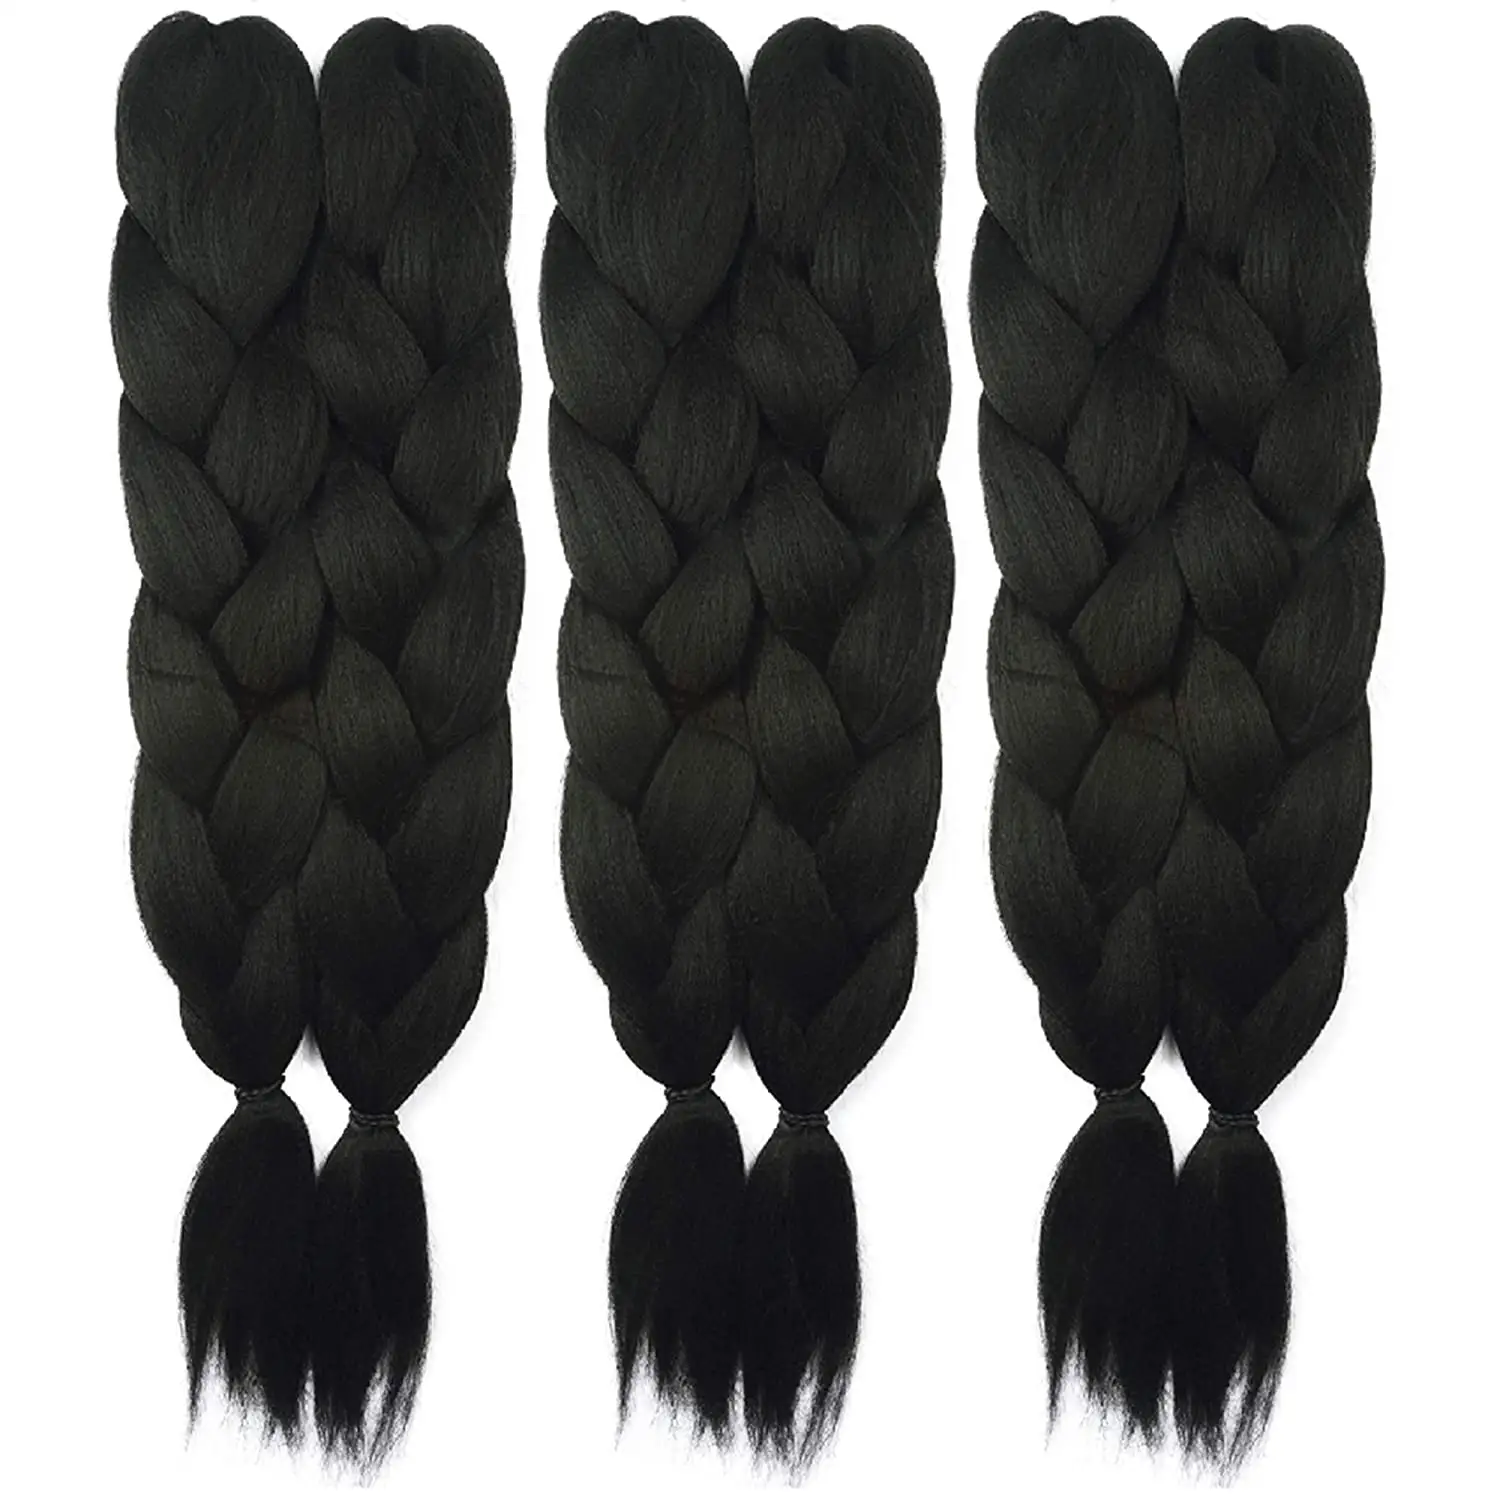 Лидер продаж, плетеные волосы yaki Jumbo с эффектом омбре, оптовая продажа, 170 г, африканские плетеные волосы, 48 дюймов, синтетические плетеные волосы для наращивания